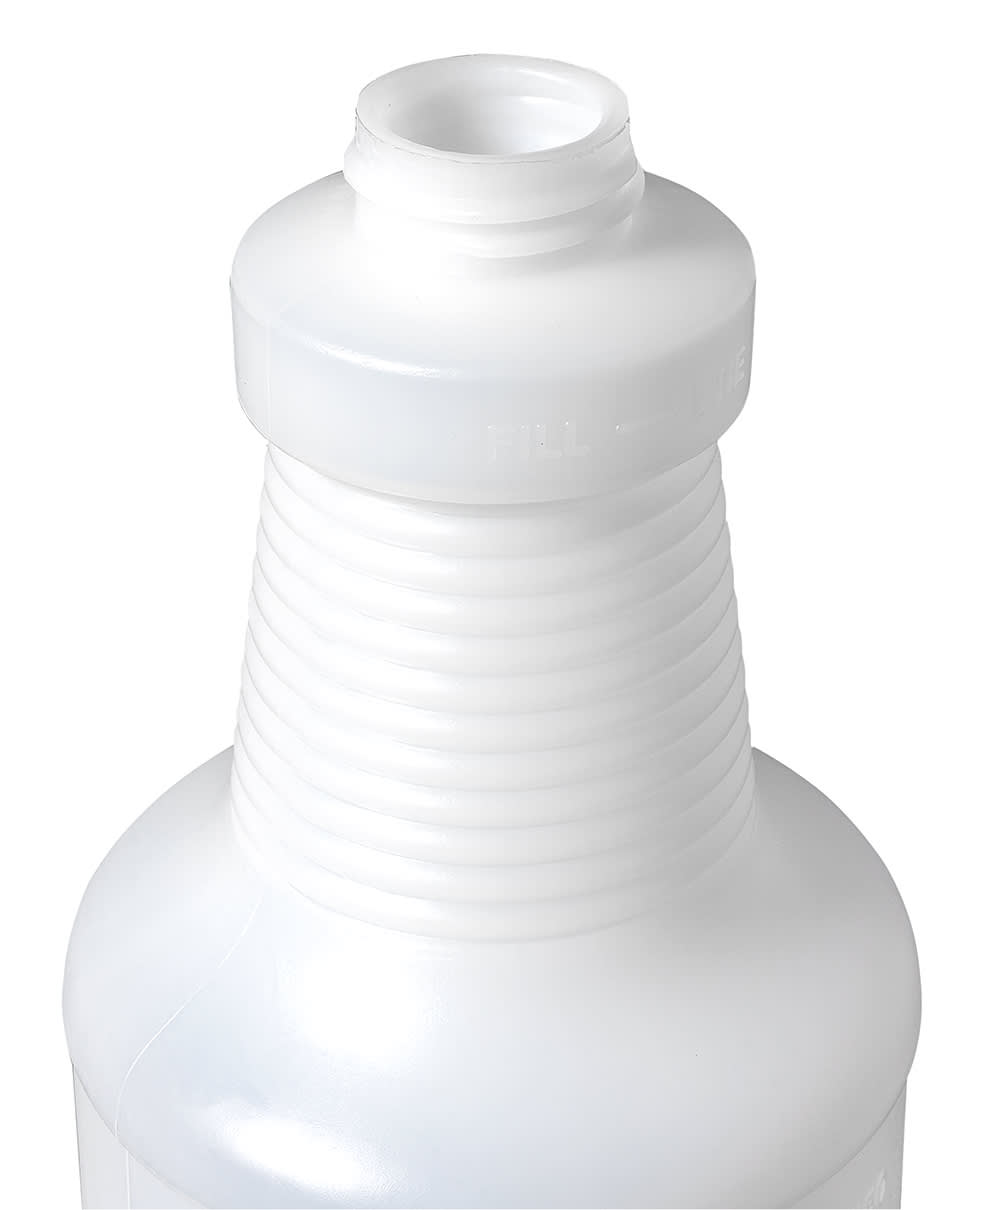 Kwazar 084110 Compressed Air Spray Bottle, 1.5 L, White